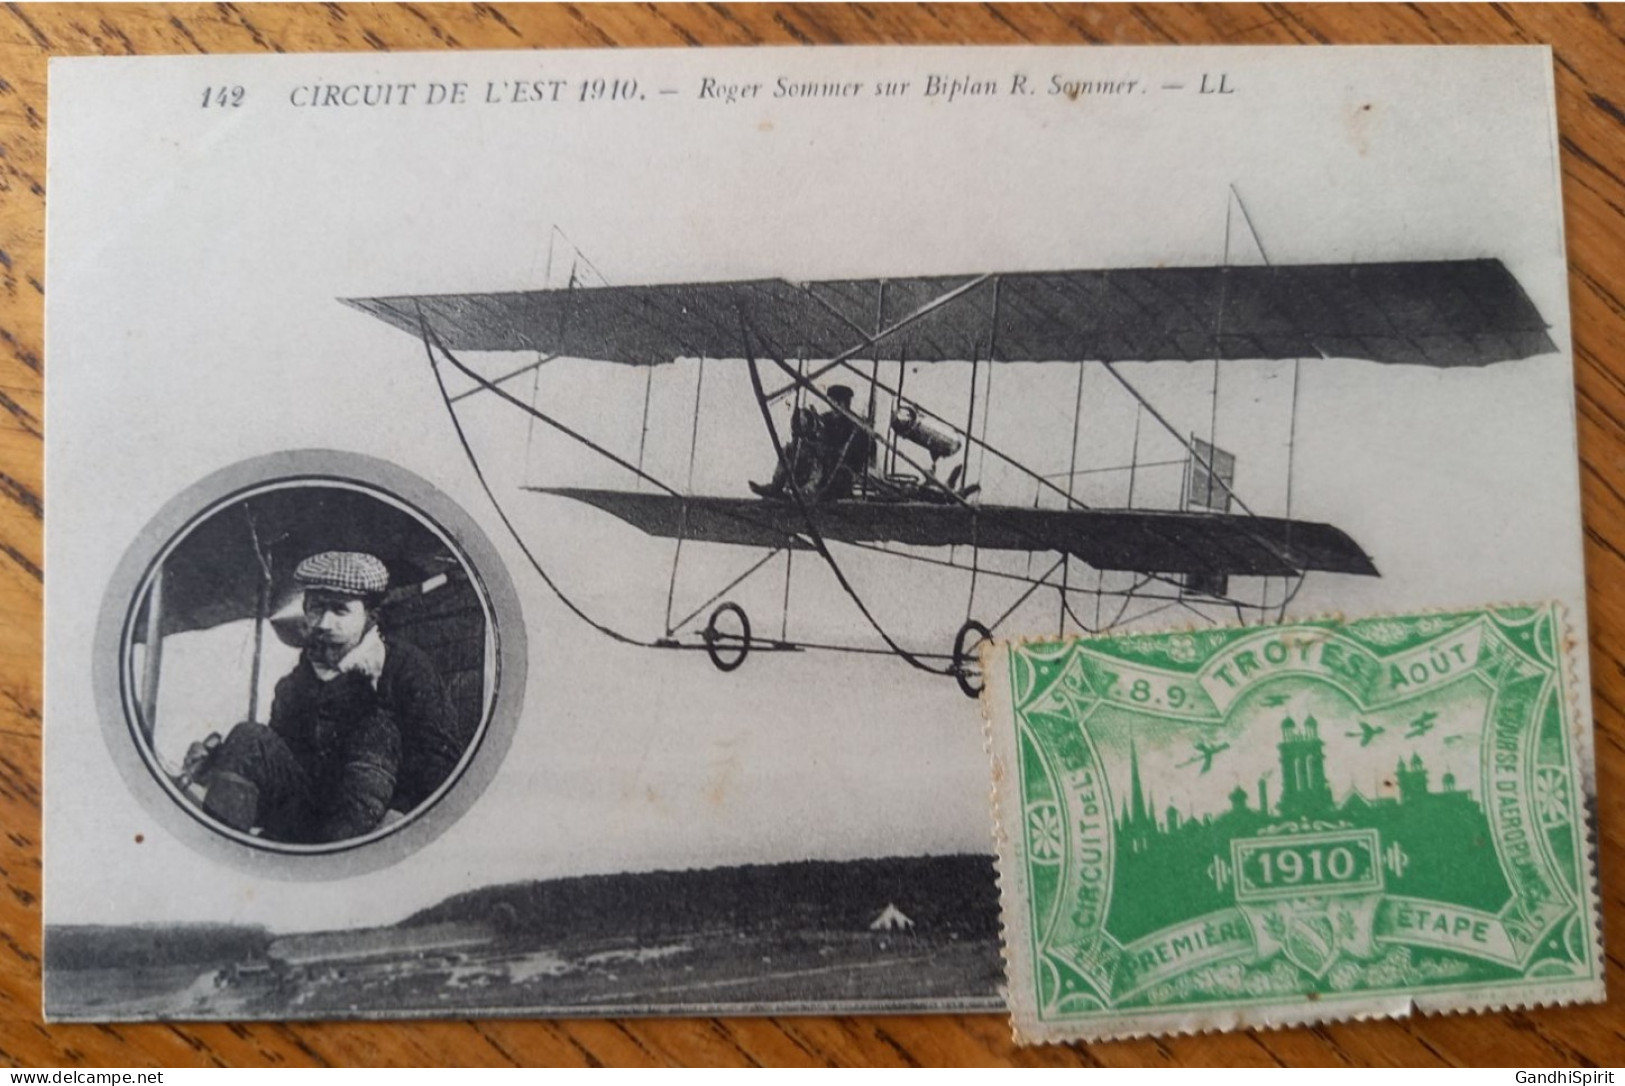 Errinophilie - Circuit De L'Est, Courses D'Aéroplanes, 1ère Première étape, Troyes 7.8.9. Aout 1910, Aviation - Aviation